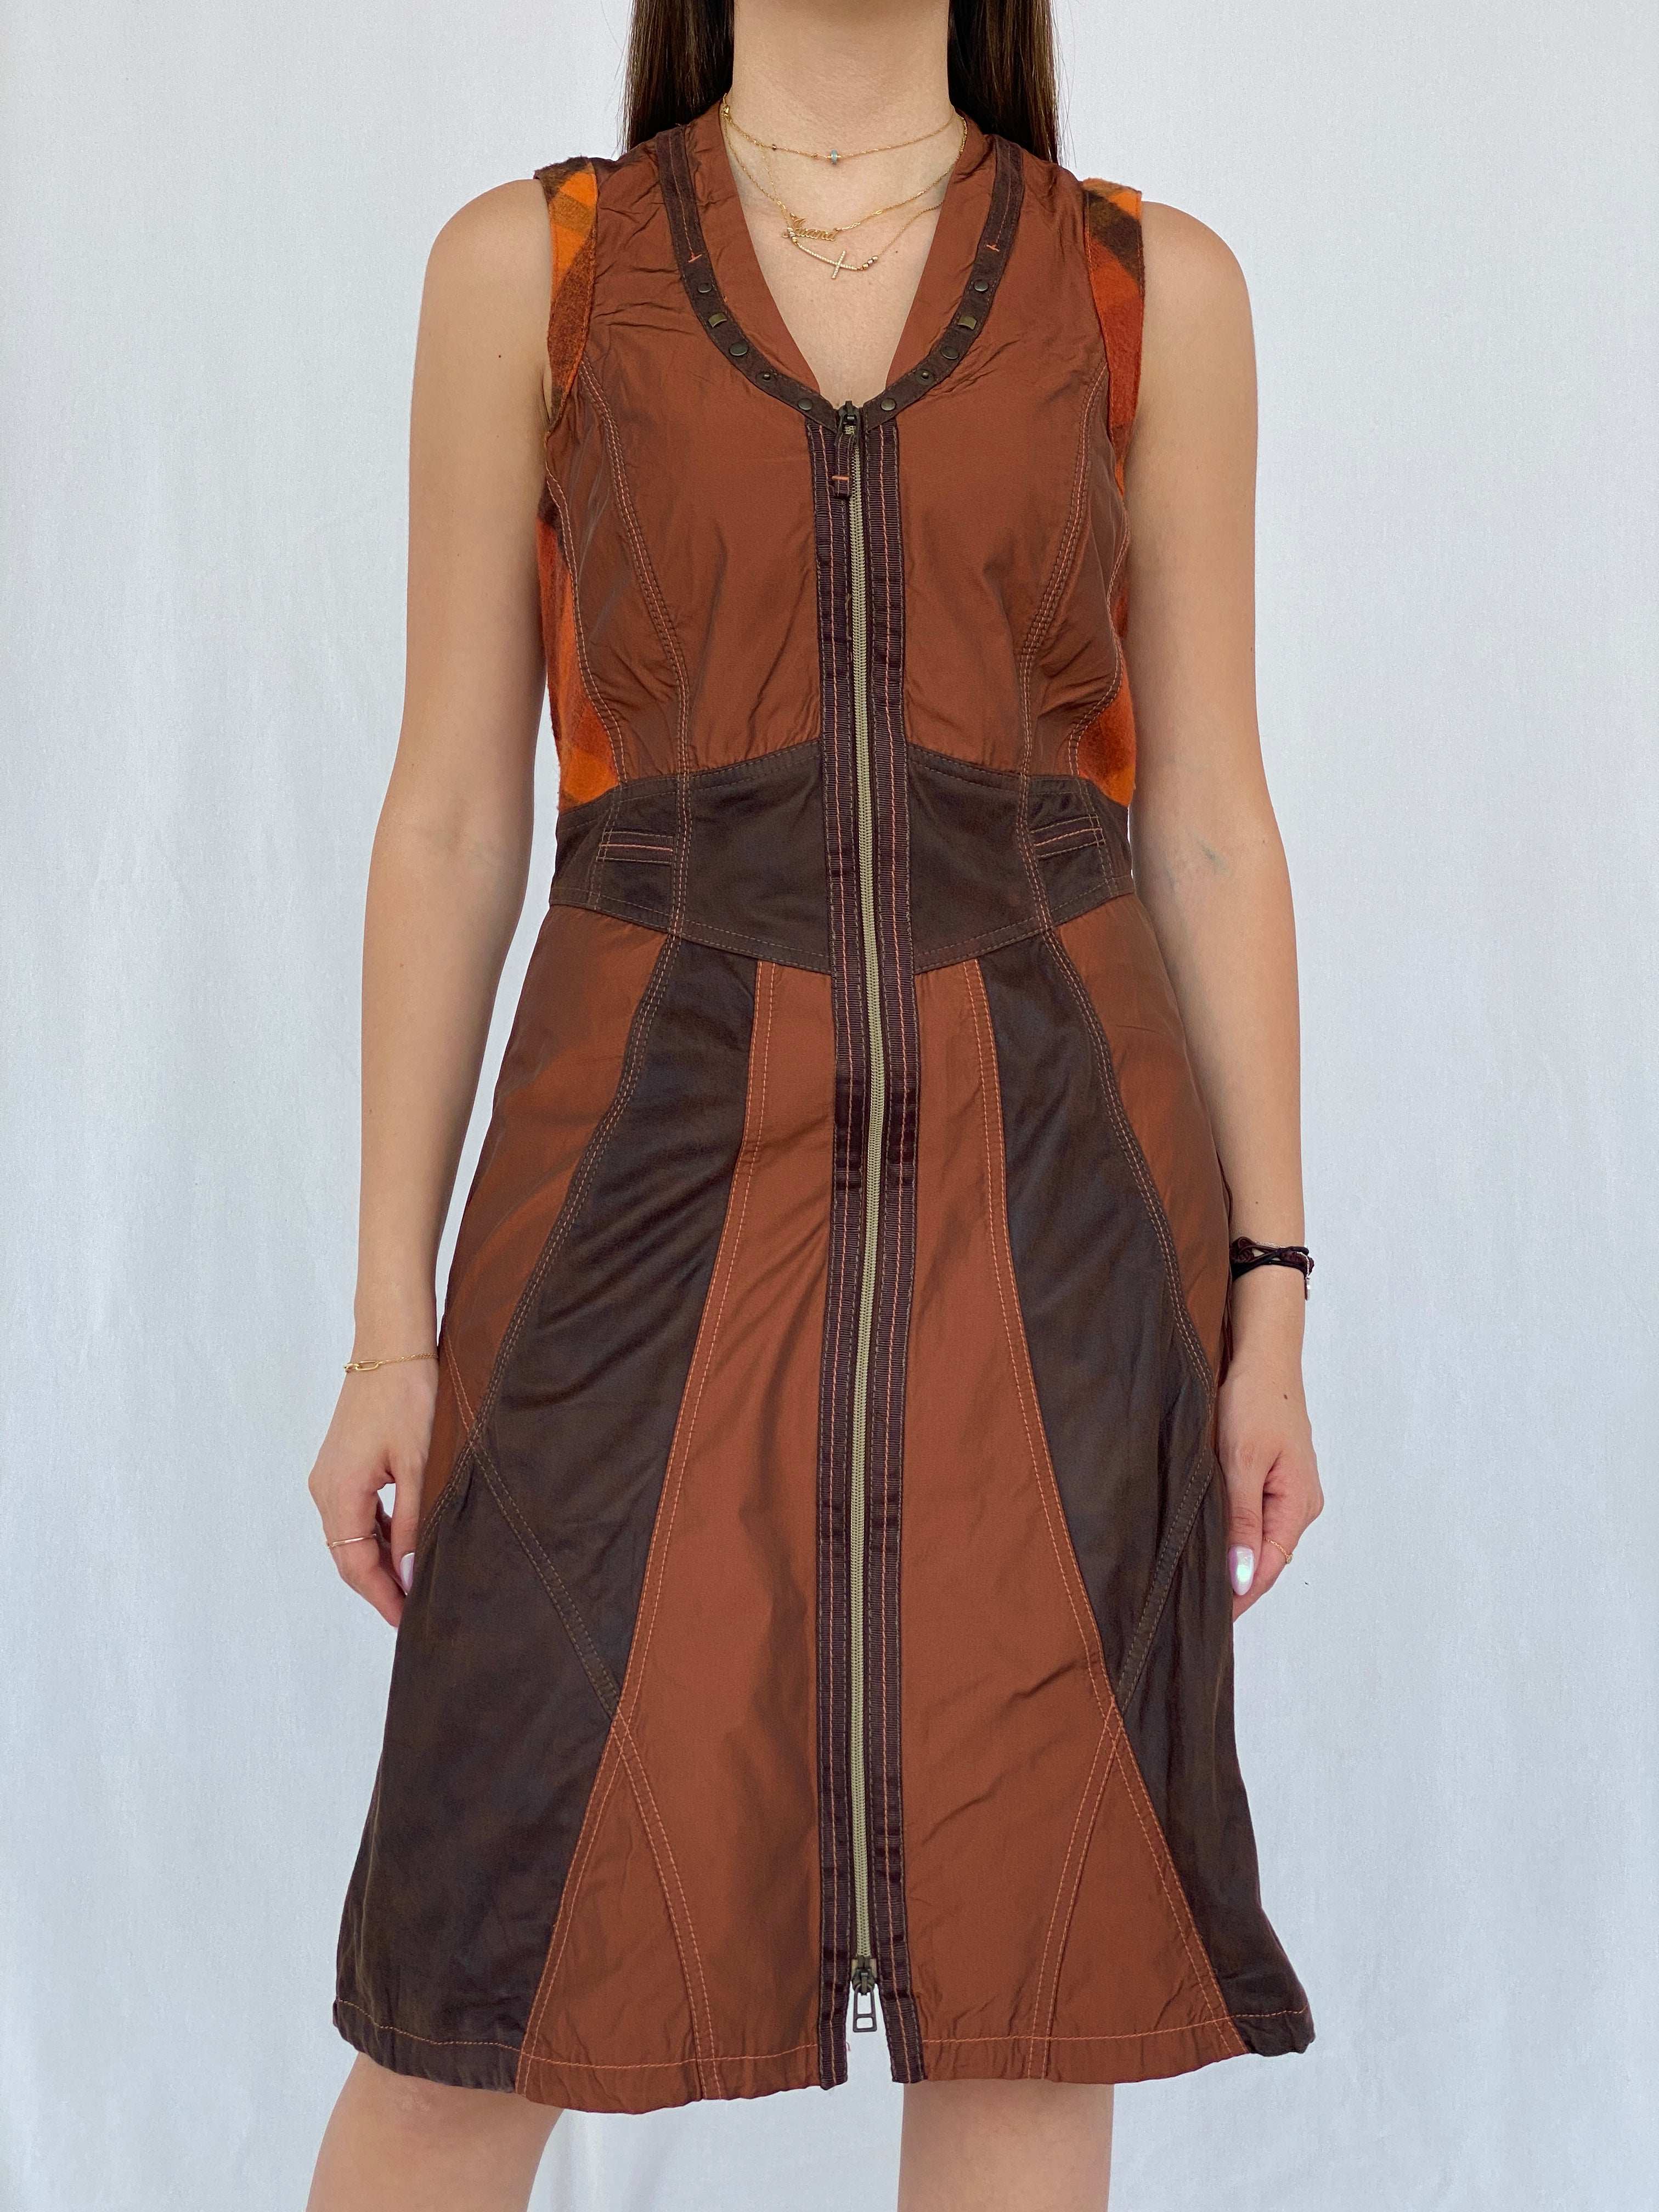 BIBA Patchwork Brown Midi Dress Size M - Balagan Vintage Midi Dress 90s, dress, Juana, midi dress, NEW IN